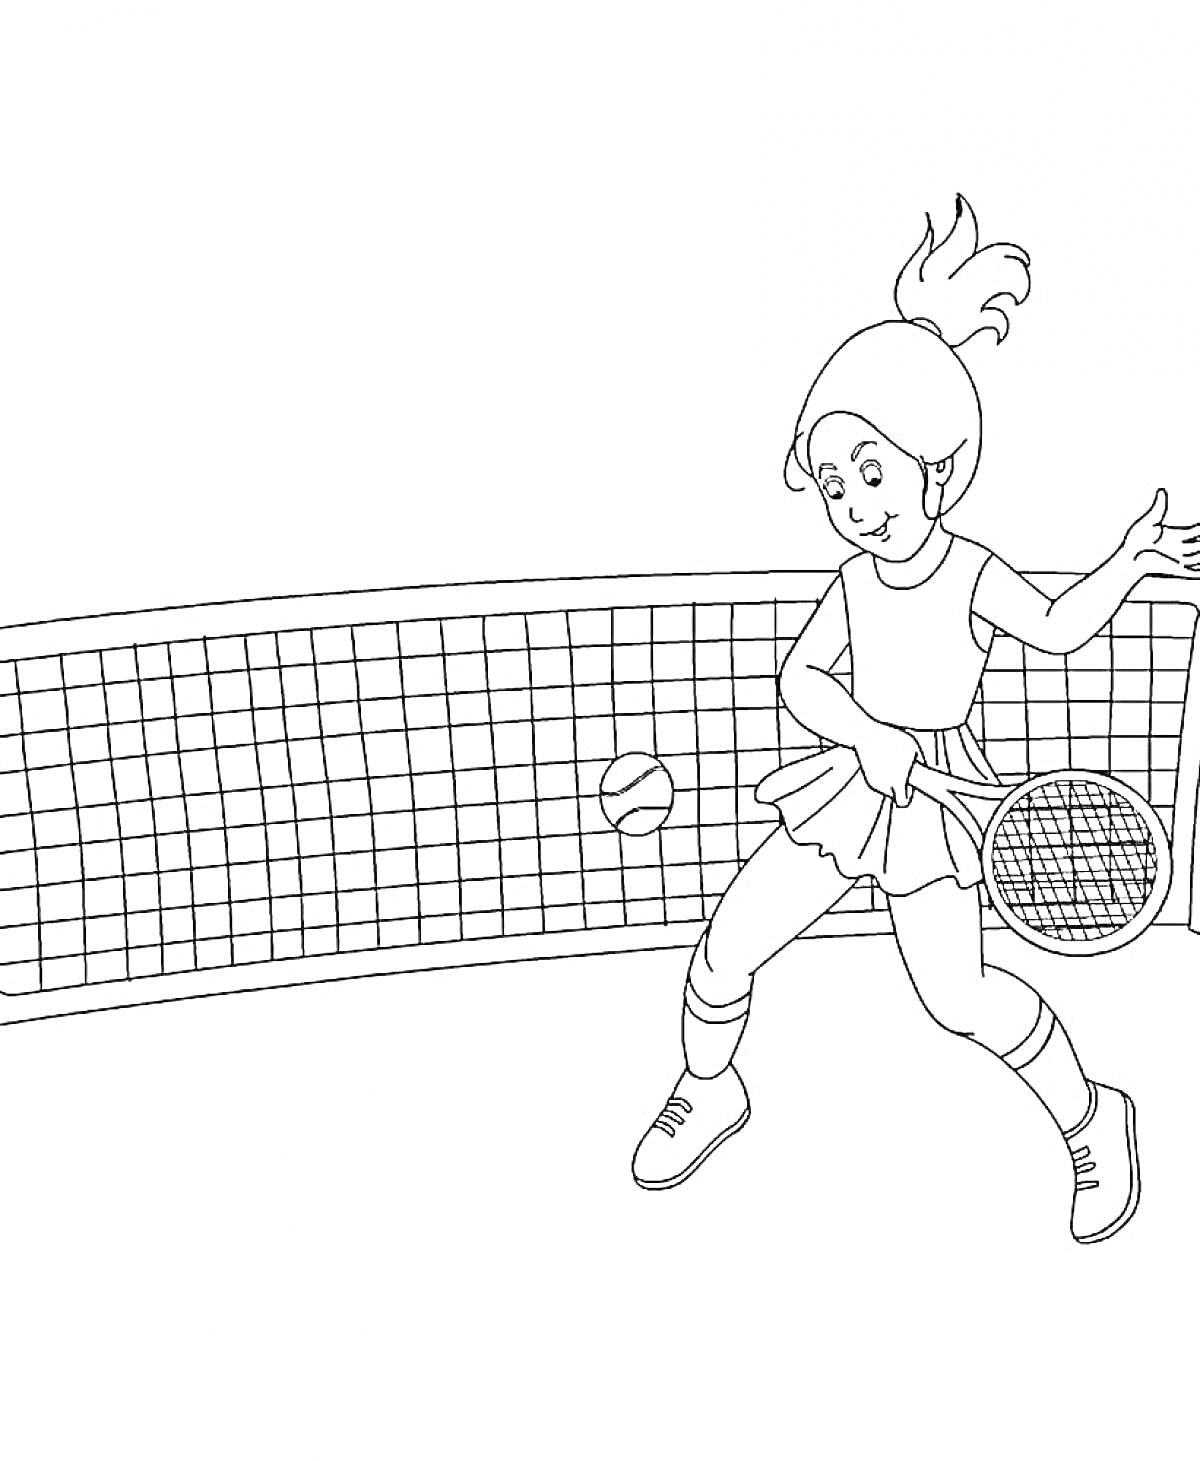 Раскраска Девочка играет в теннис перед сеткой, в руке ракетка, мяч в воздухе.